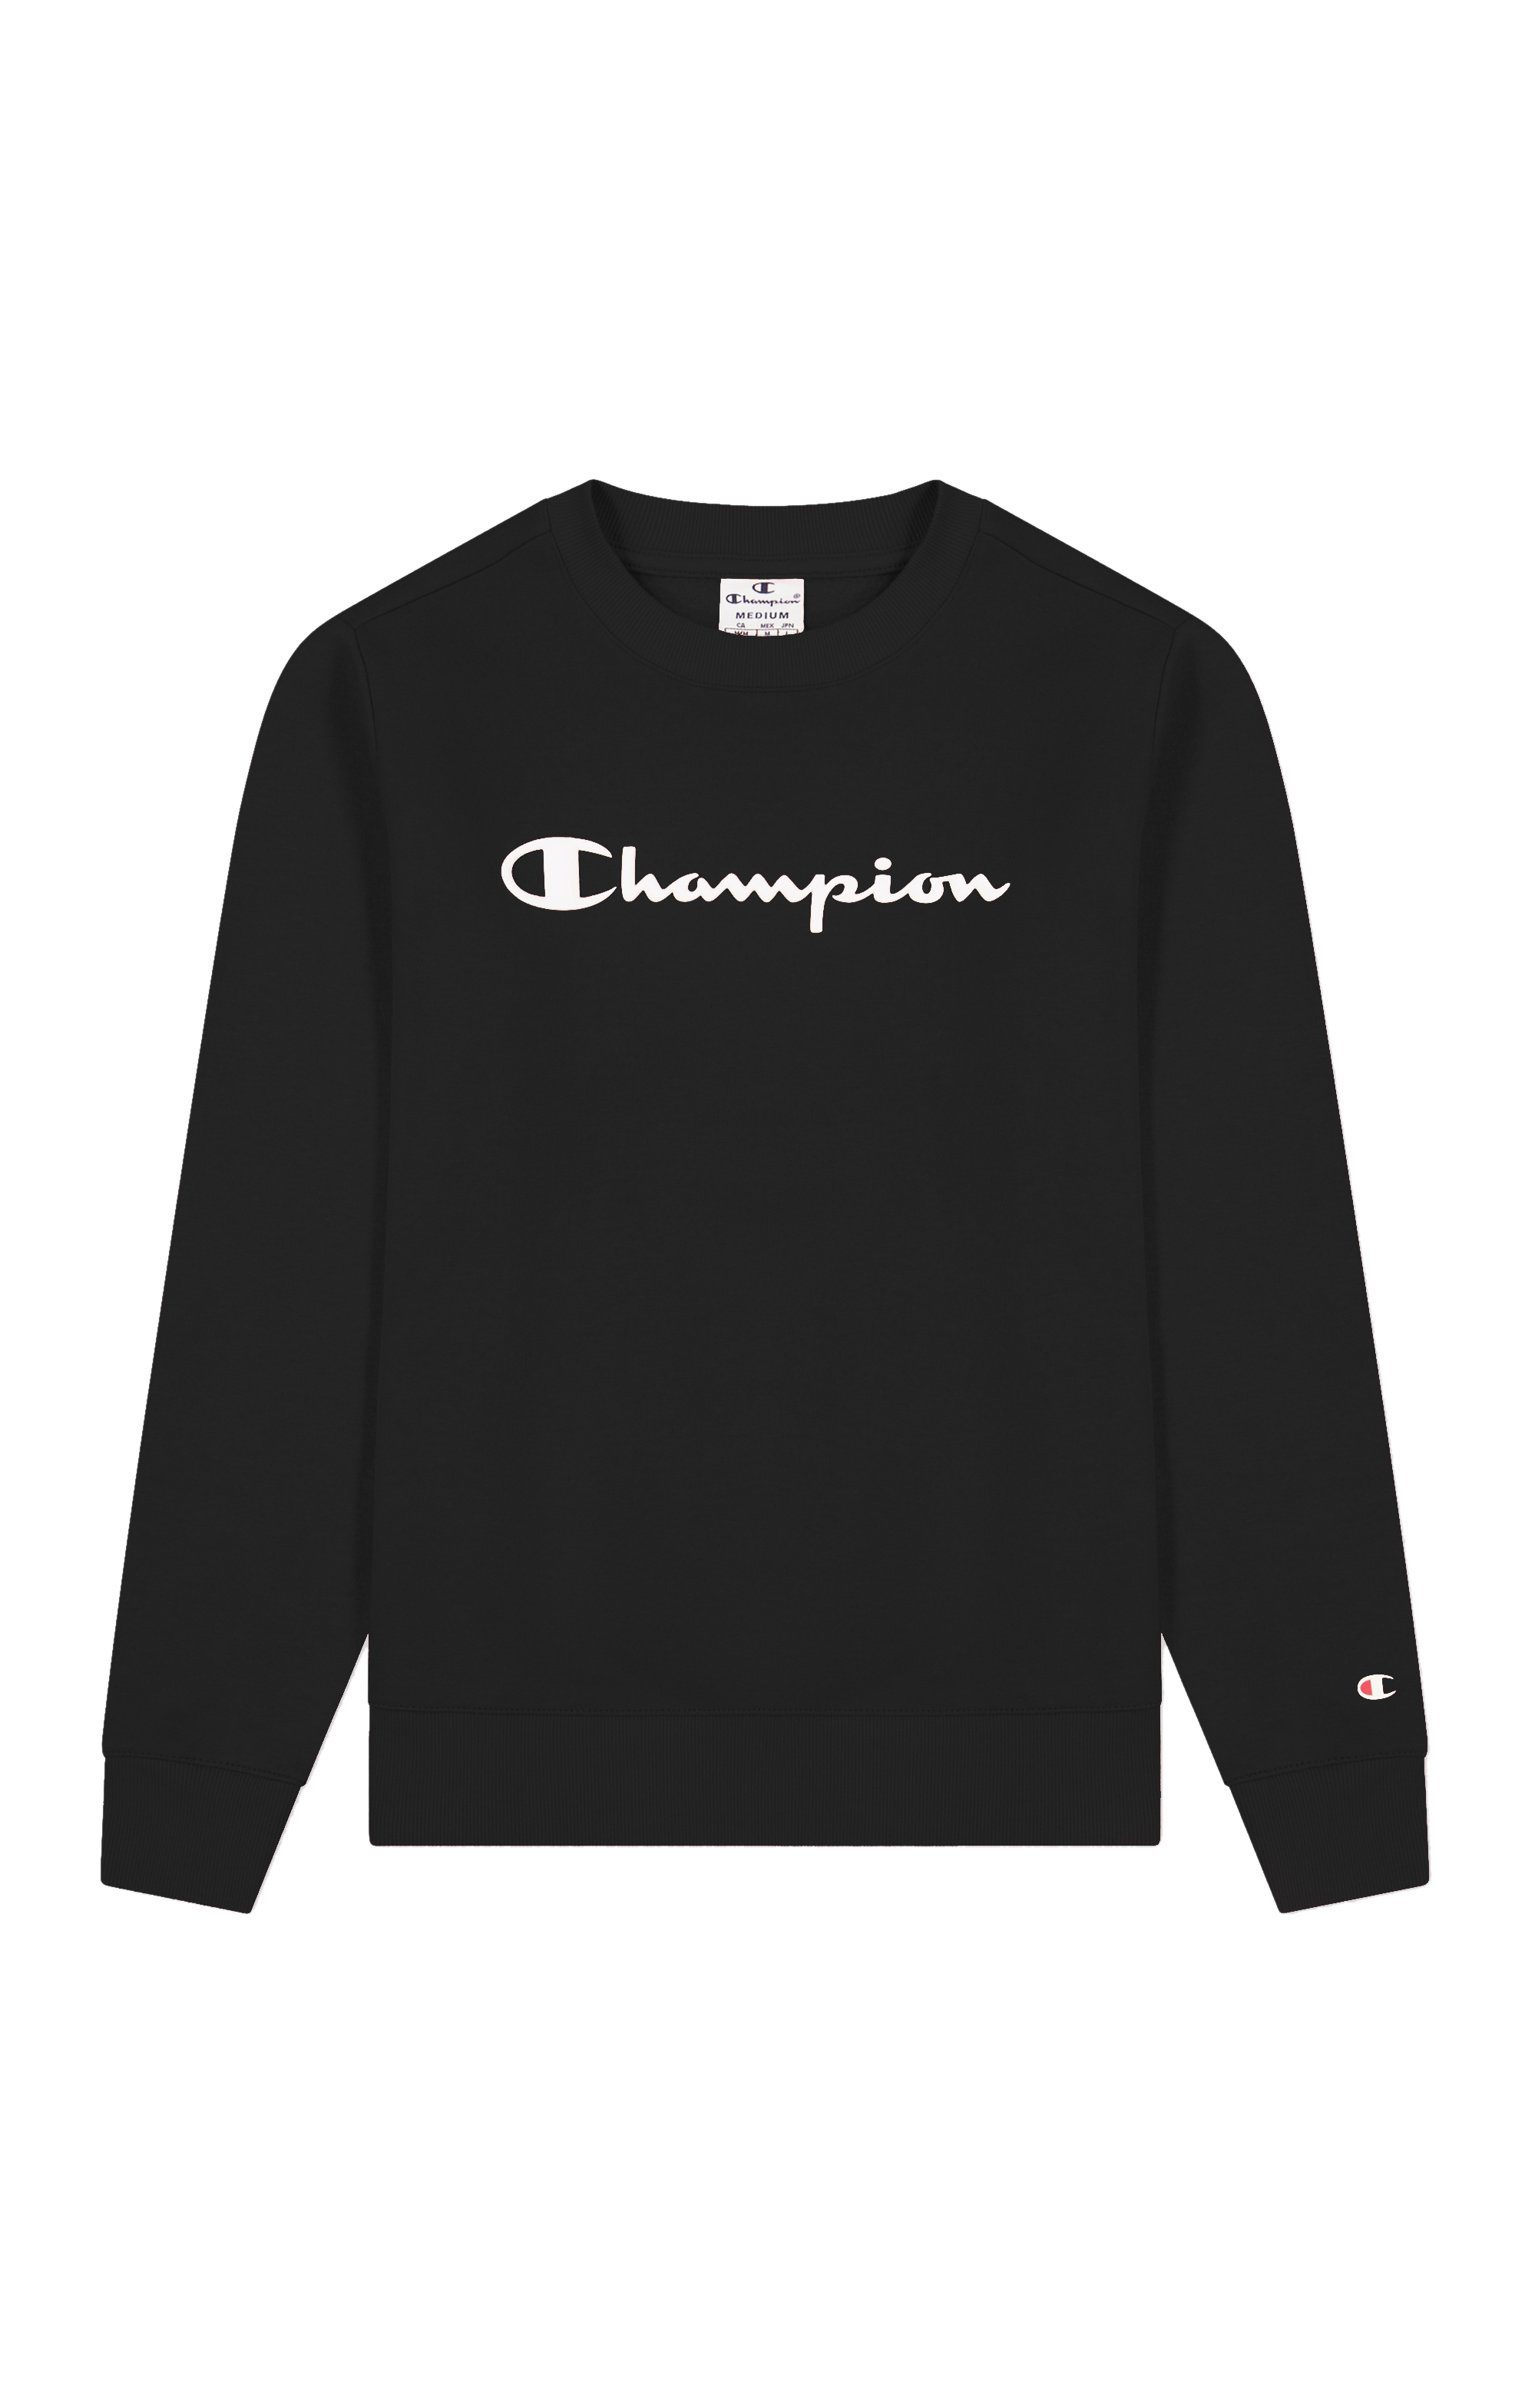 Champion Sweatshirt Champion Damen Sweatshirt Crewneck 115391 nbk (schwarz)